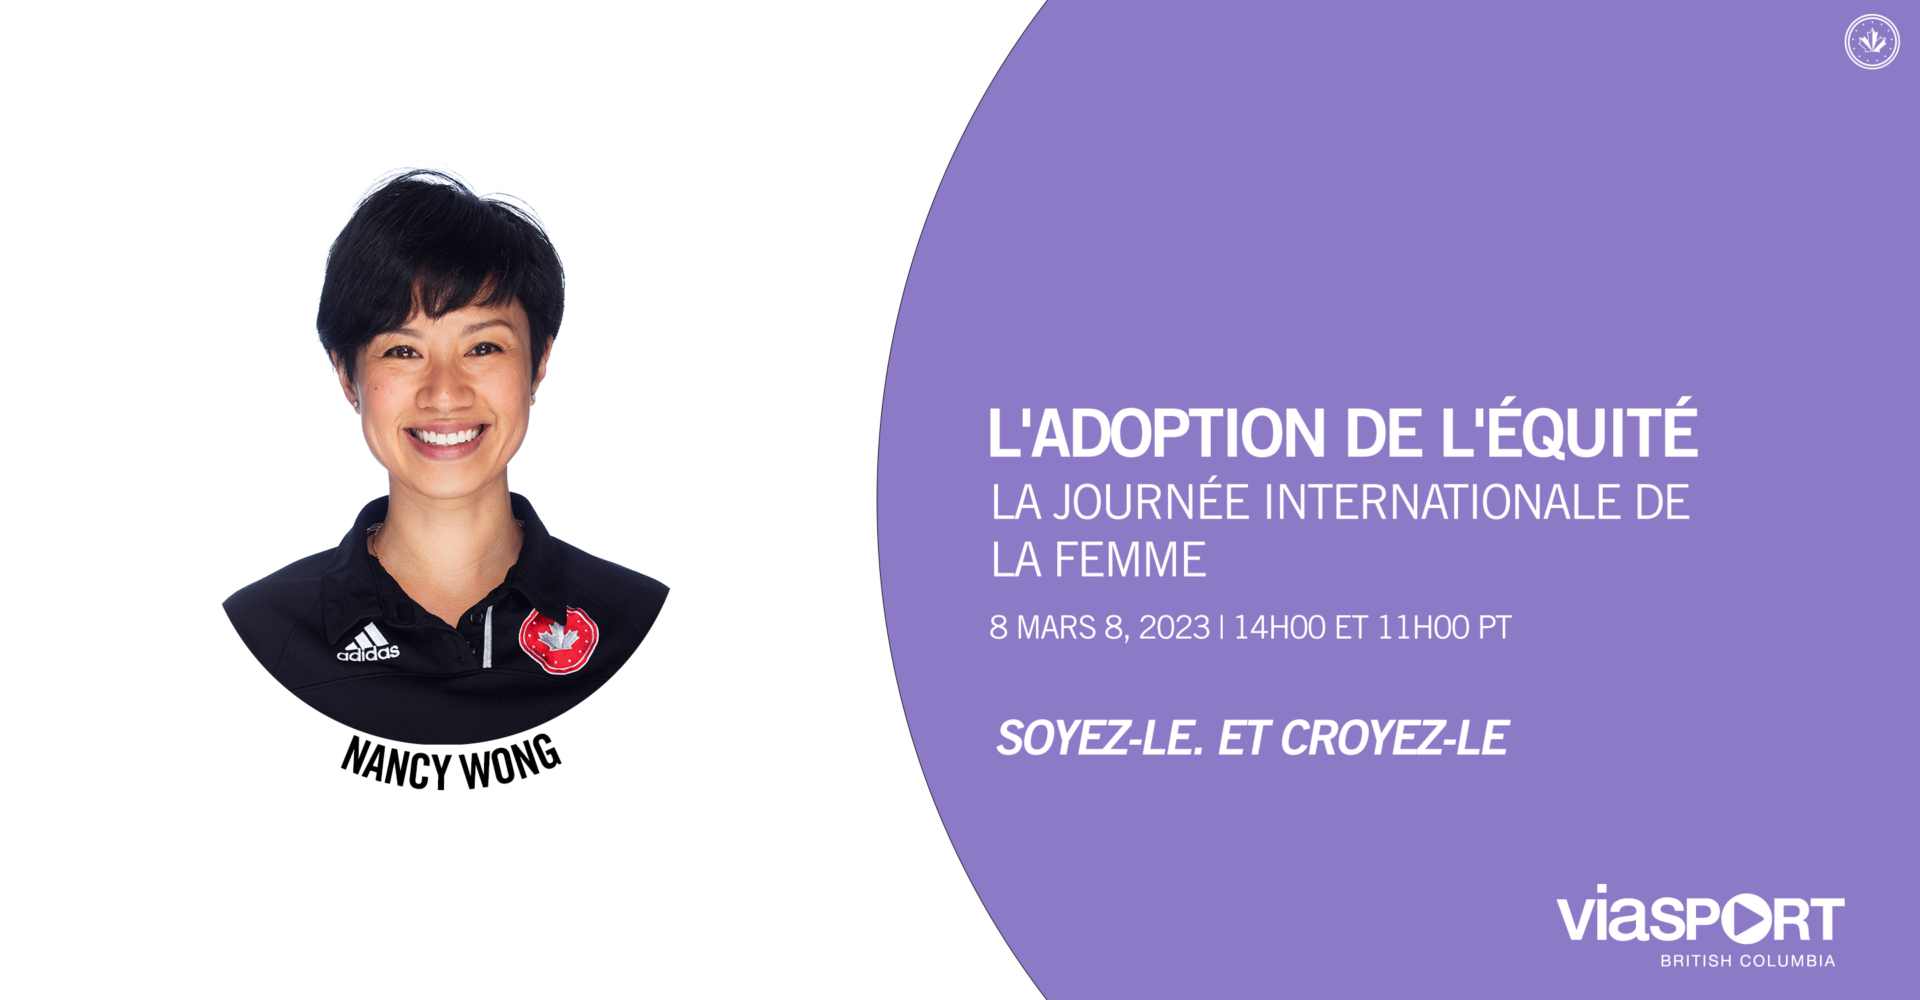 Nancy Wong de WRC se joint au panel de ViaSport pour la Journée internationale de la femme